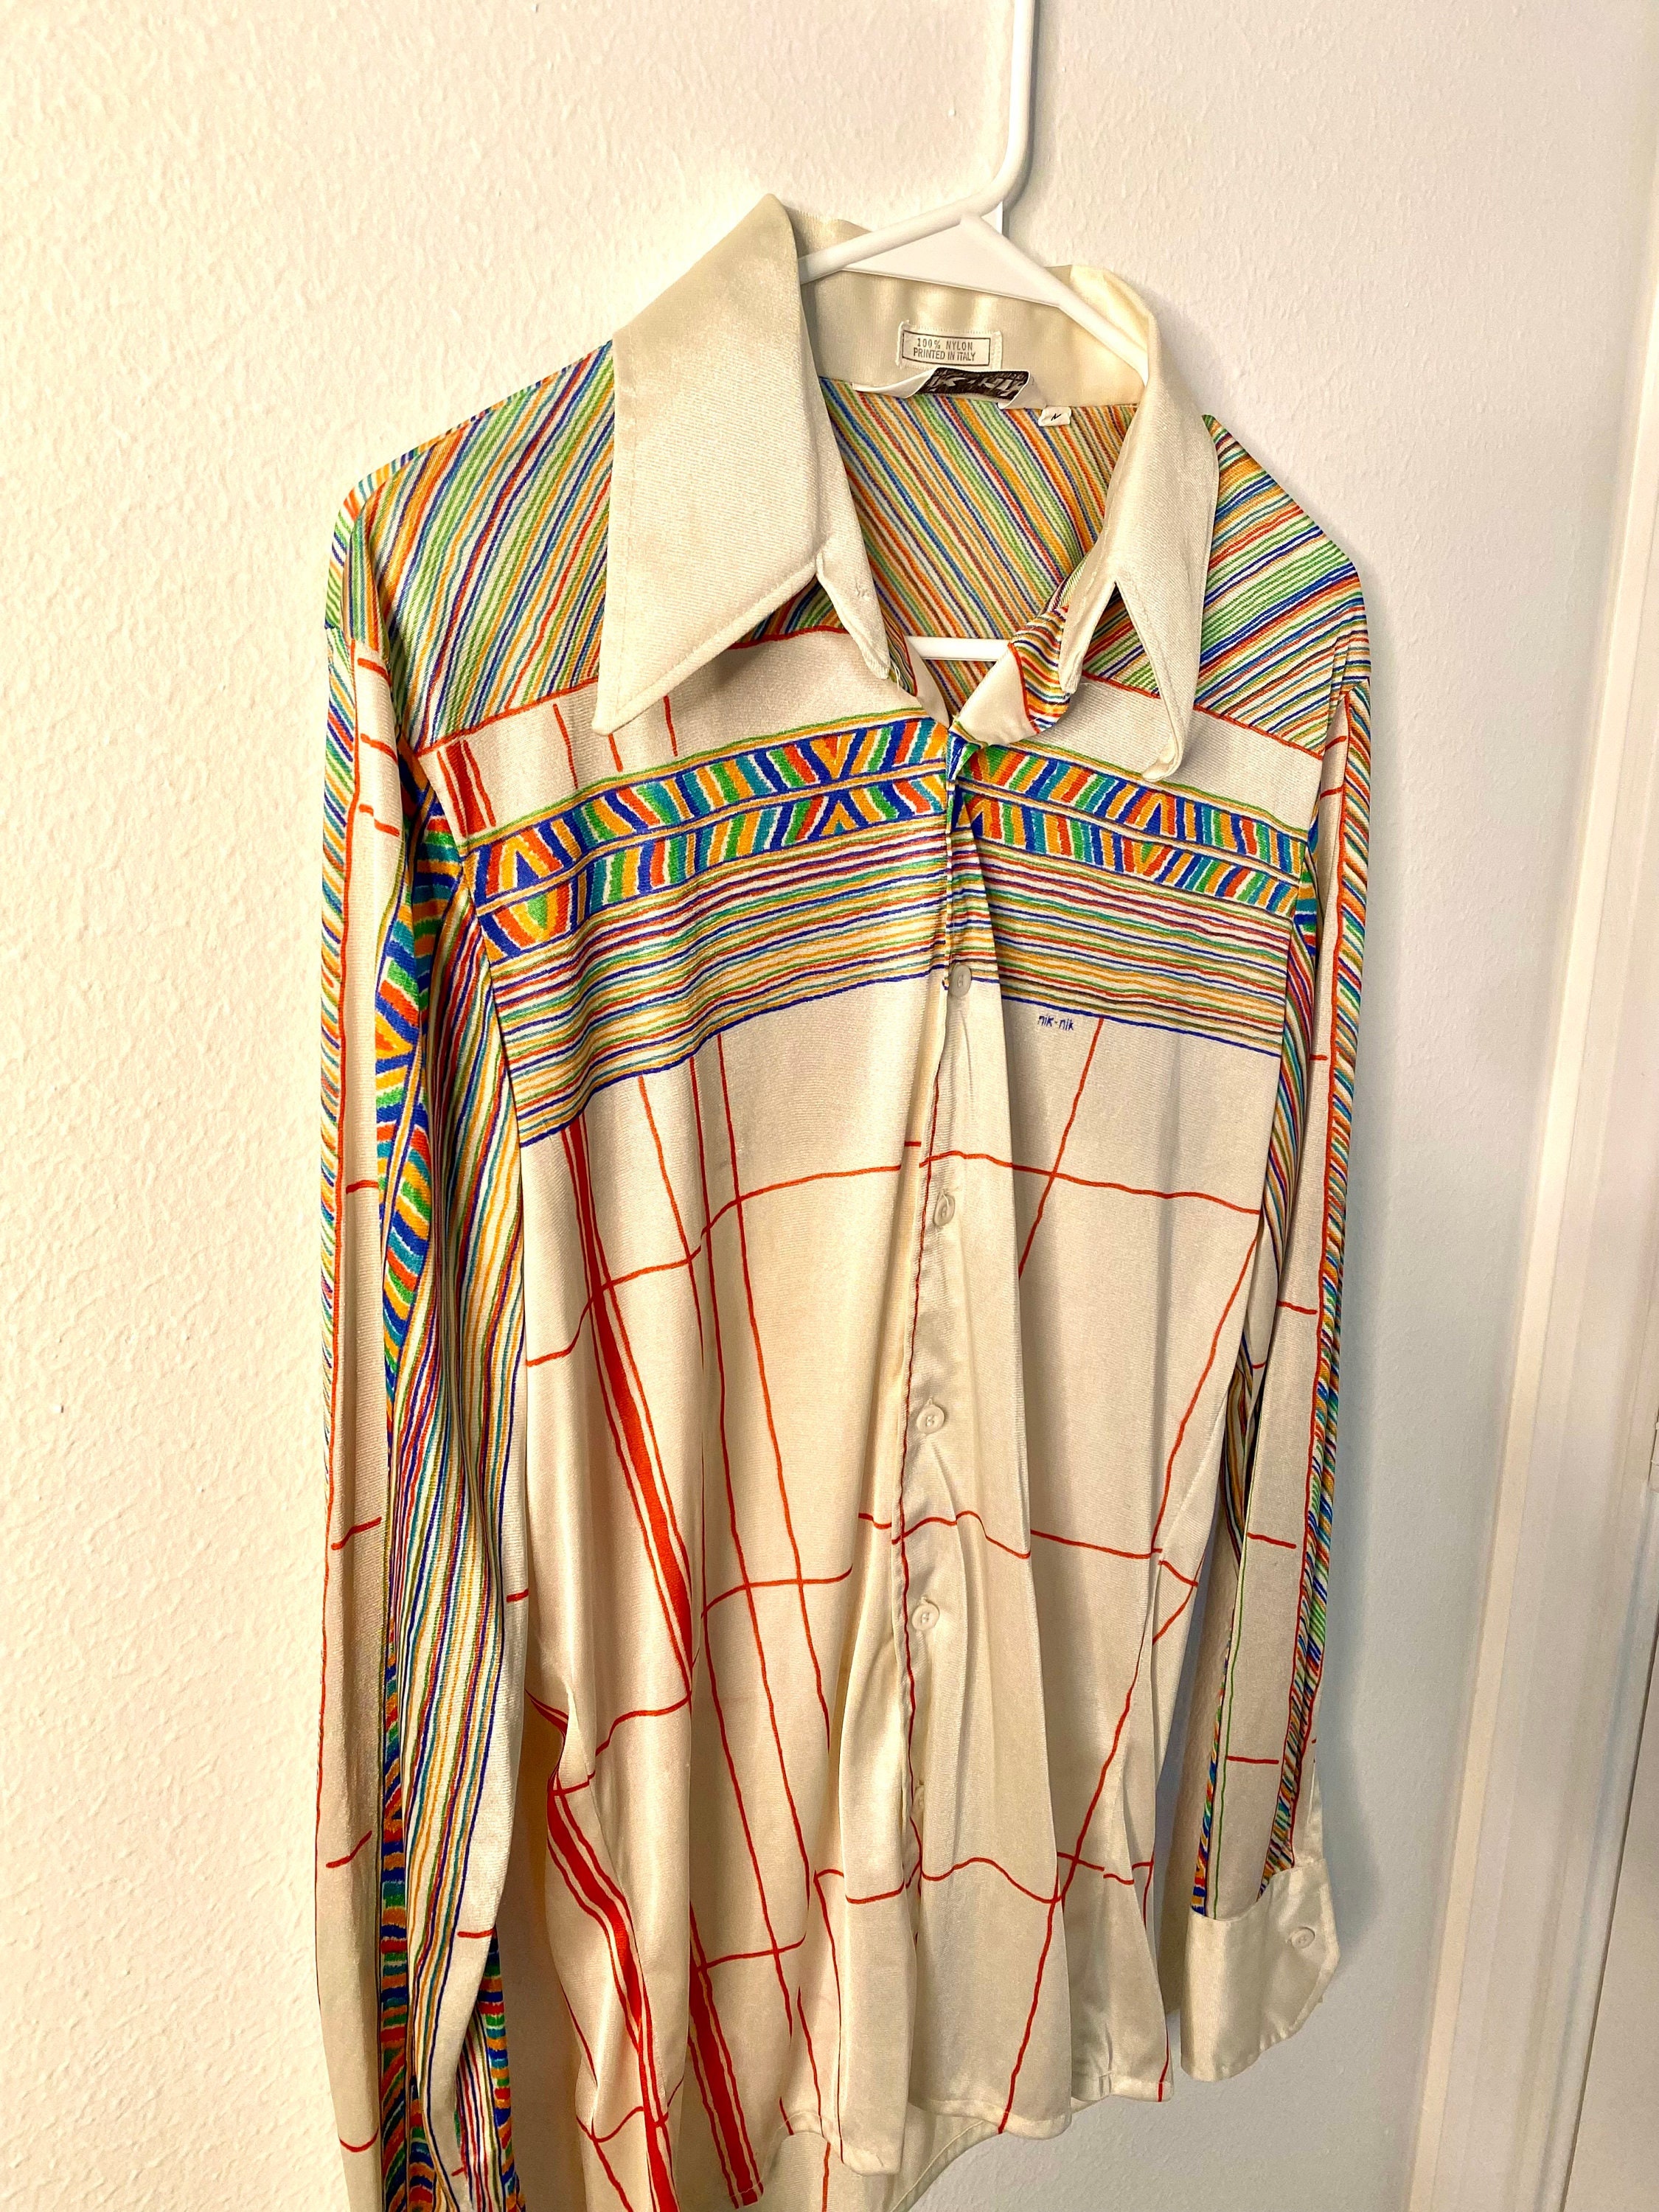 Vintage 70s nik Nik Nylon Disco Shirt With Stripes and Bright